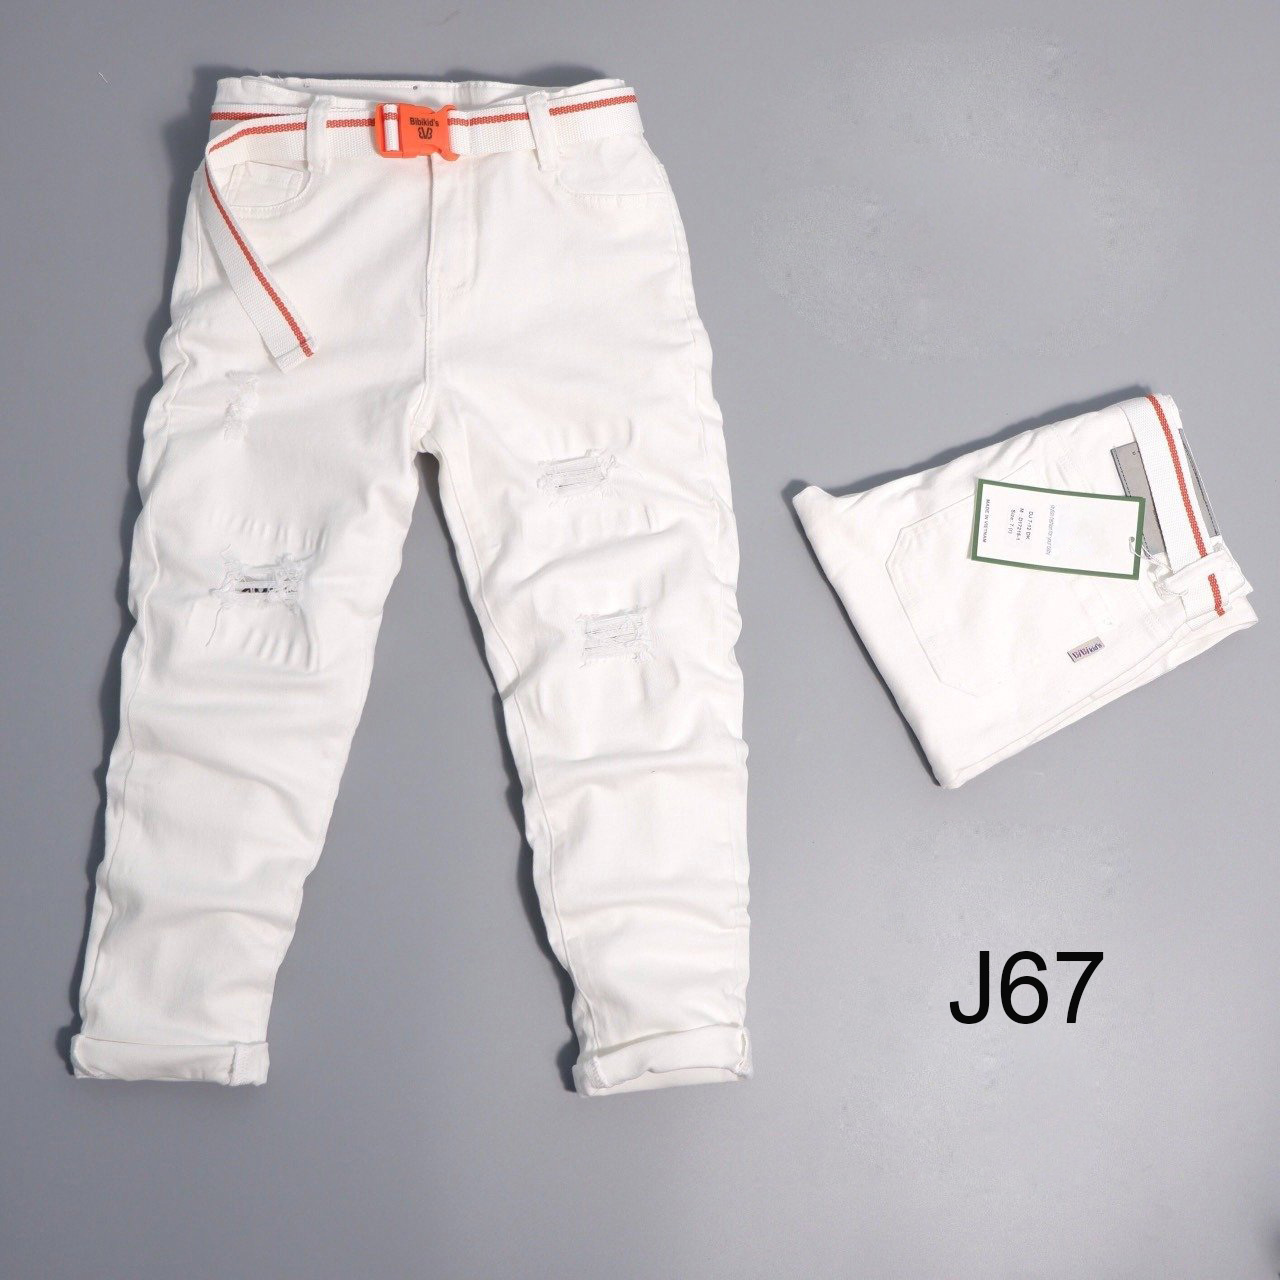 Quần jean bé trai màu trắng dài J67 (rách)